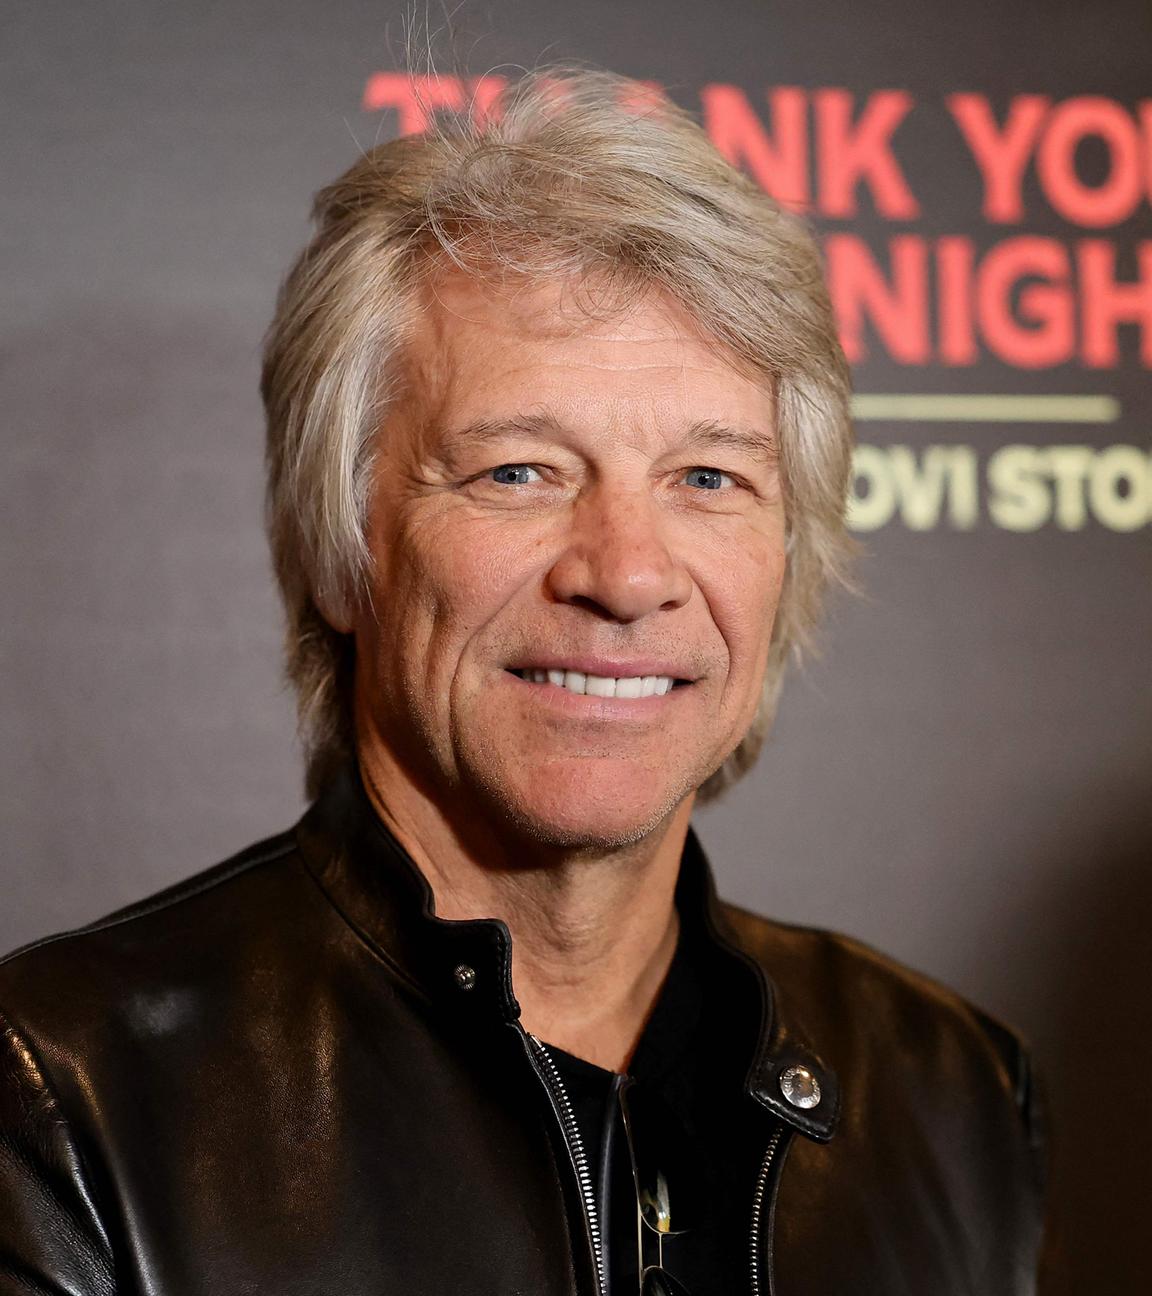 Britain The Bon Jovi Story Premiere, die Bon Jovi Band ist anwesend und posiert lachend vor einem dunkelblauen Hintergrund.